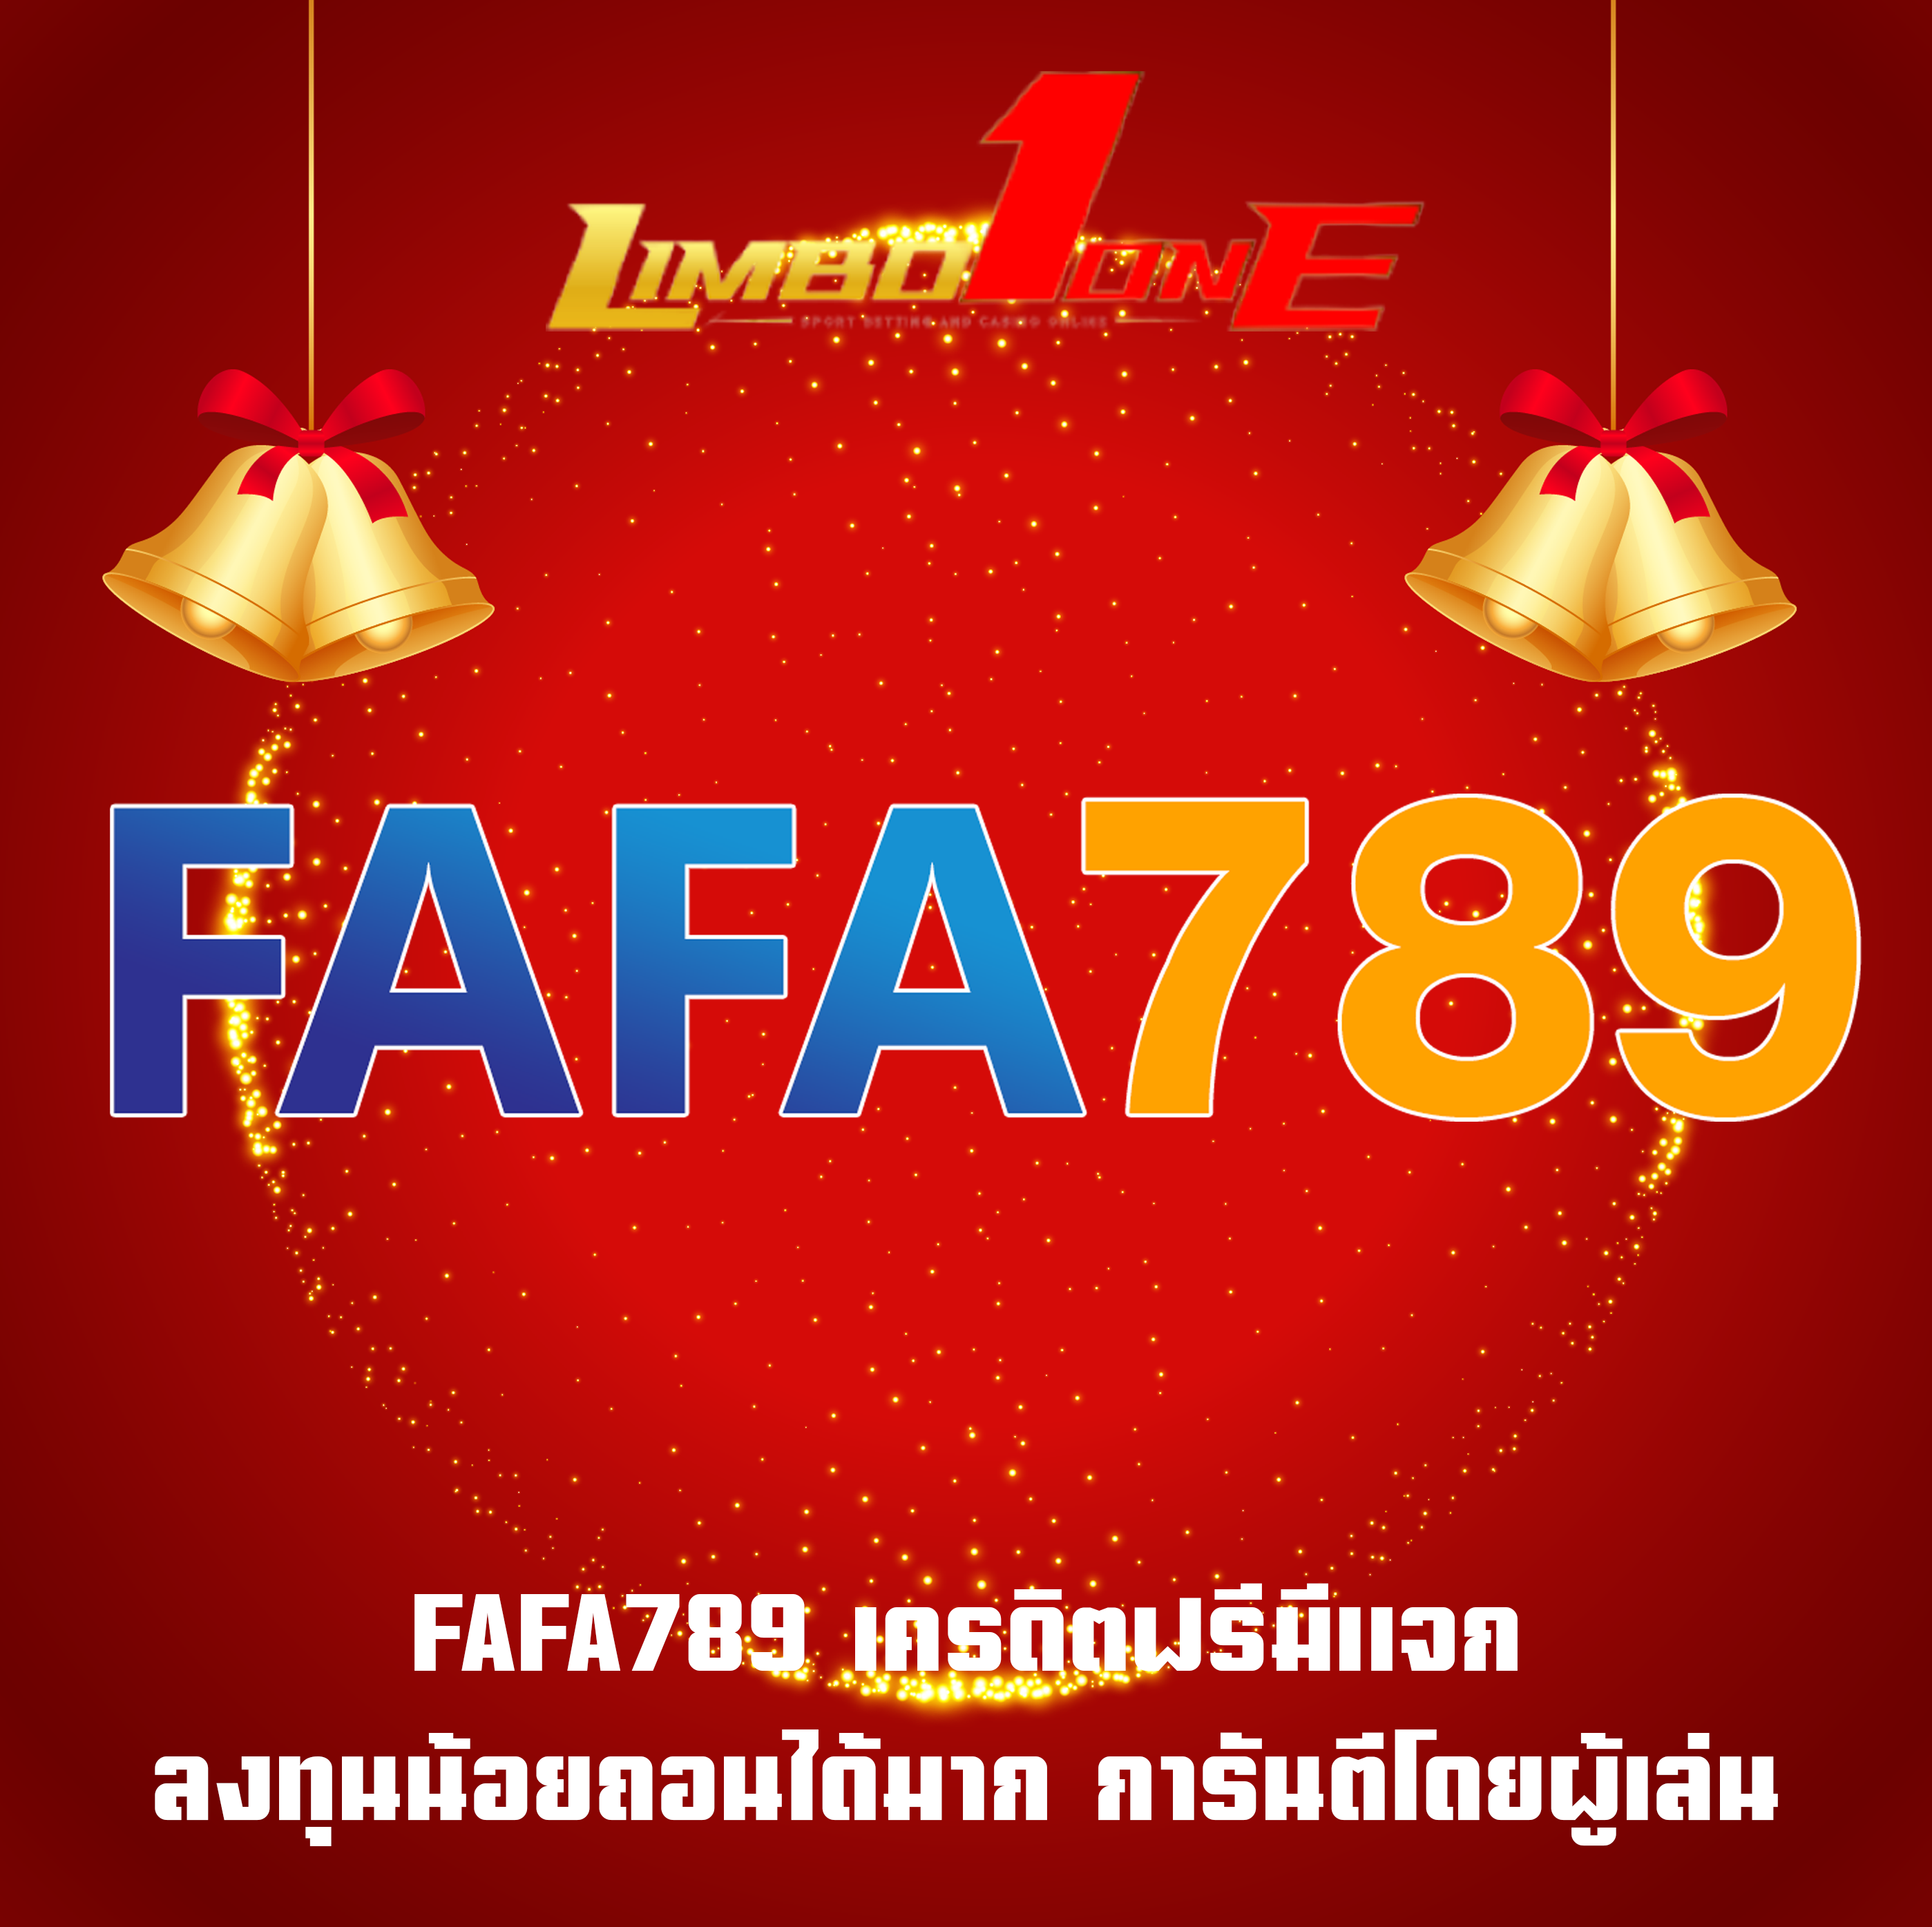 FAFA789 เครดิตฟรีมีแจก ลงทุนน้อยถอนได้มาก การันตีโดยผู้เล่น